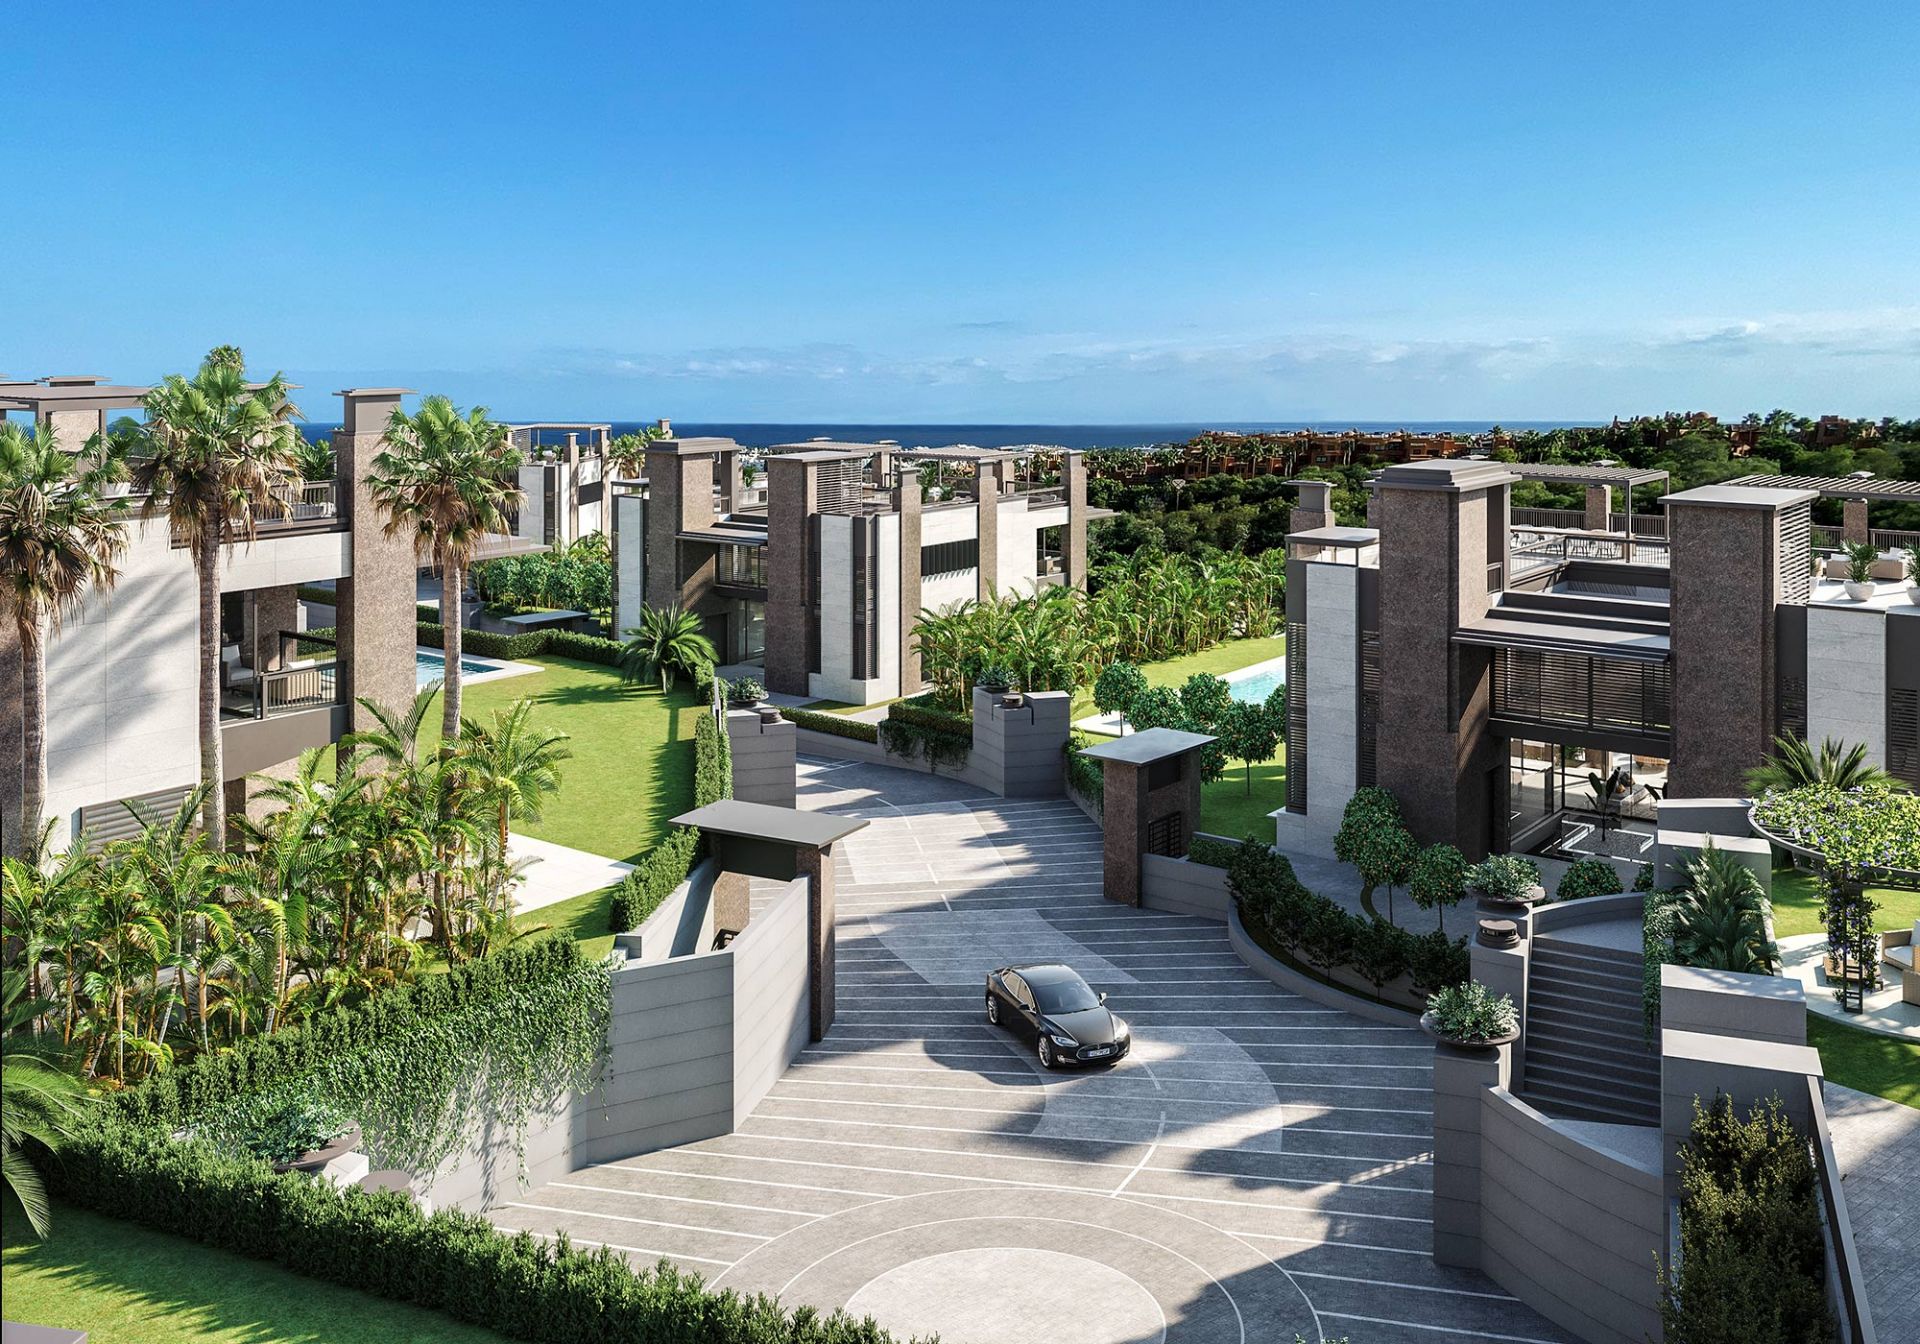 Elegant residential villa project in Puerto Banús | Engel & Völkers Marbella